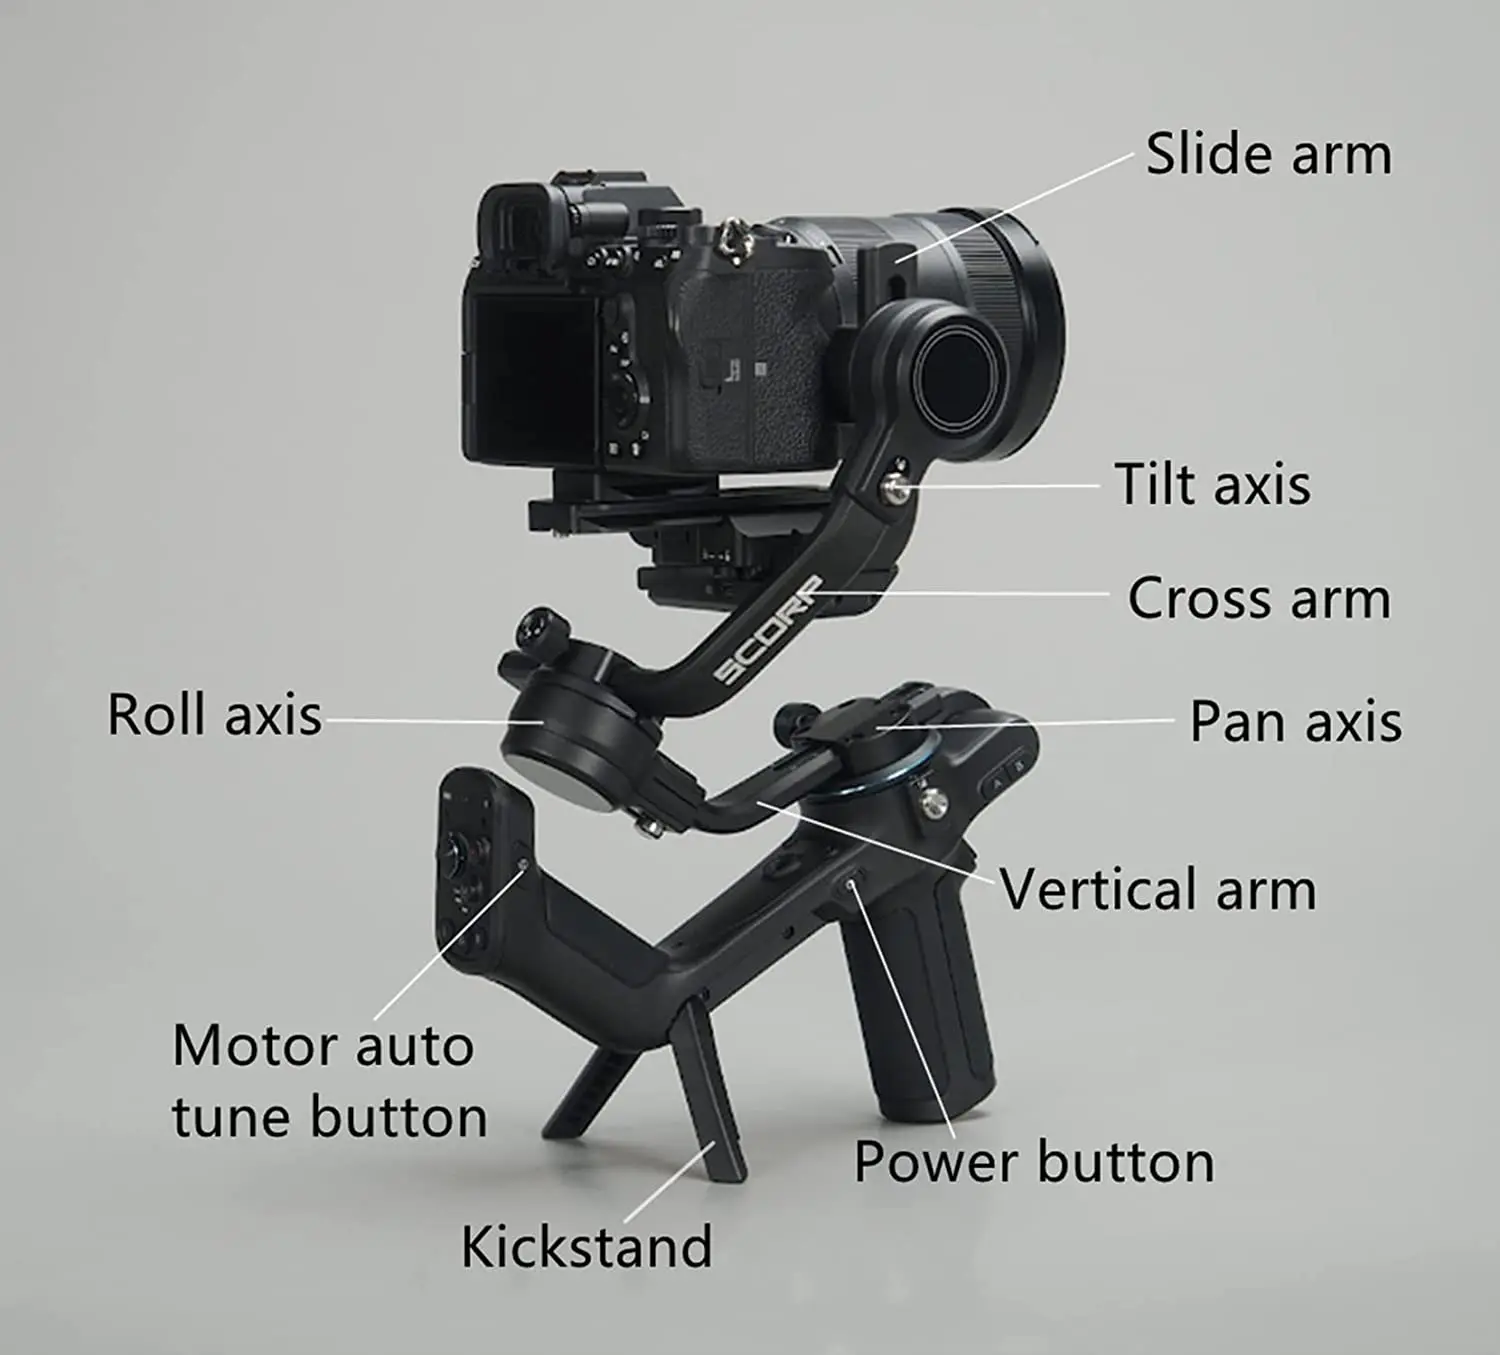 Feiyutech-ミラーレスおよびDSLRカメラ用の3軸スタビライザー,SCORP-C,sony a7r a9 a6300 canon  5d3と互換性があります